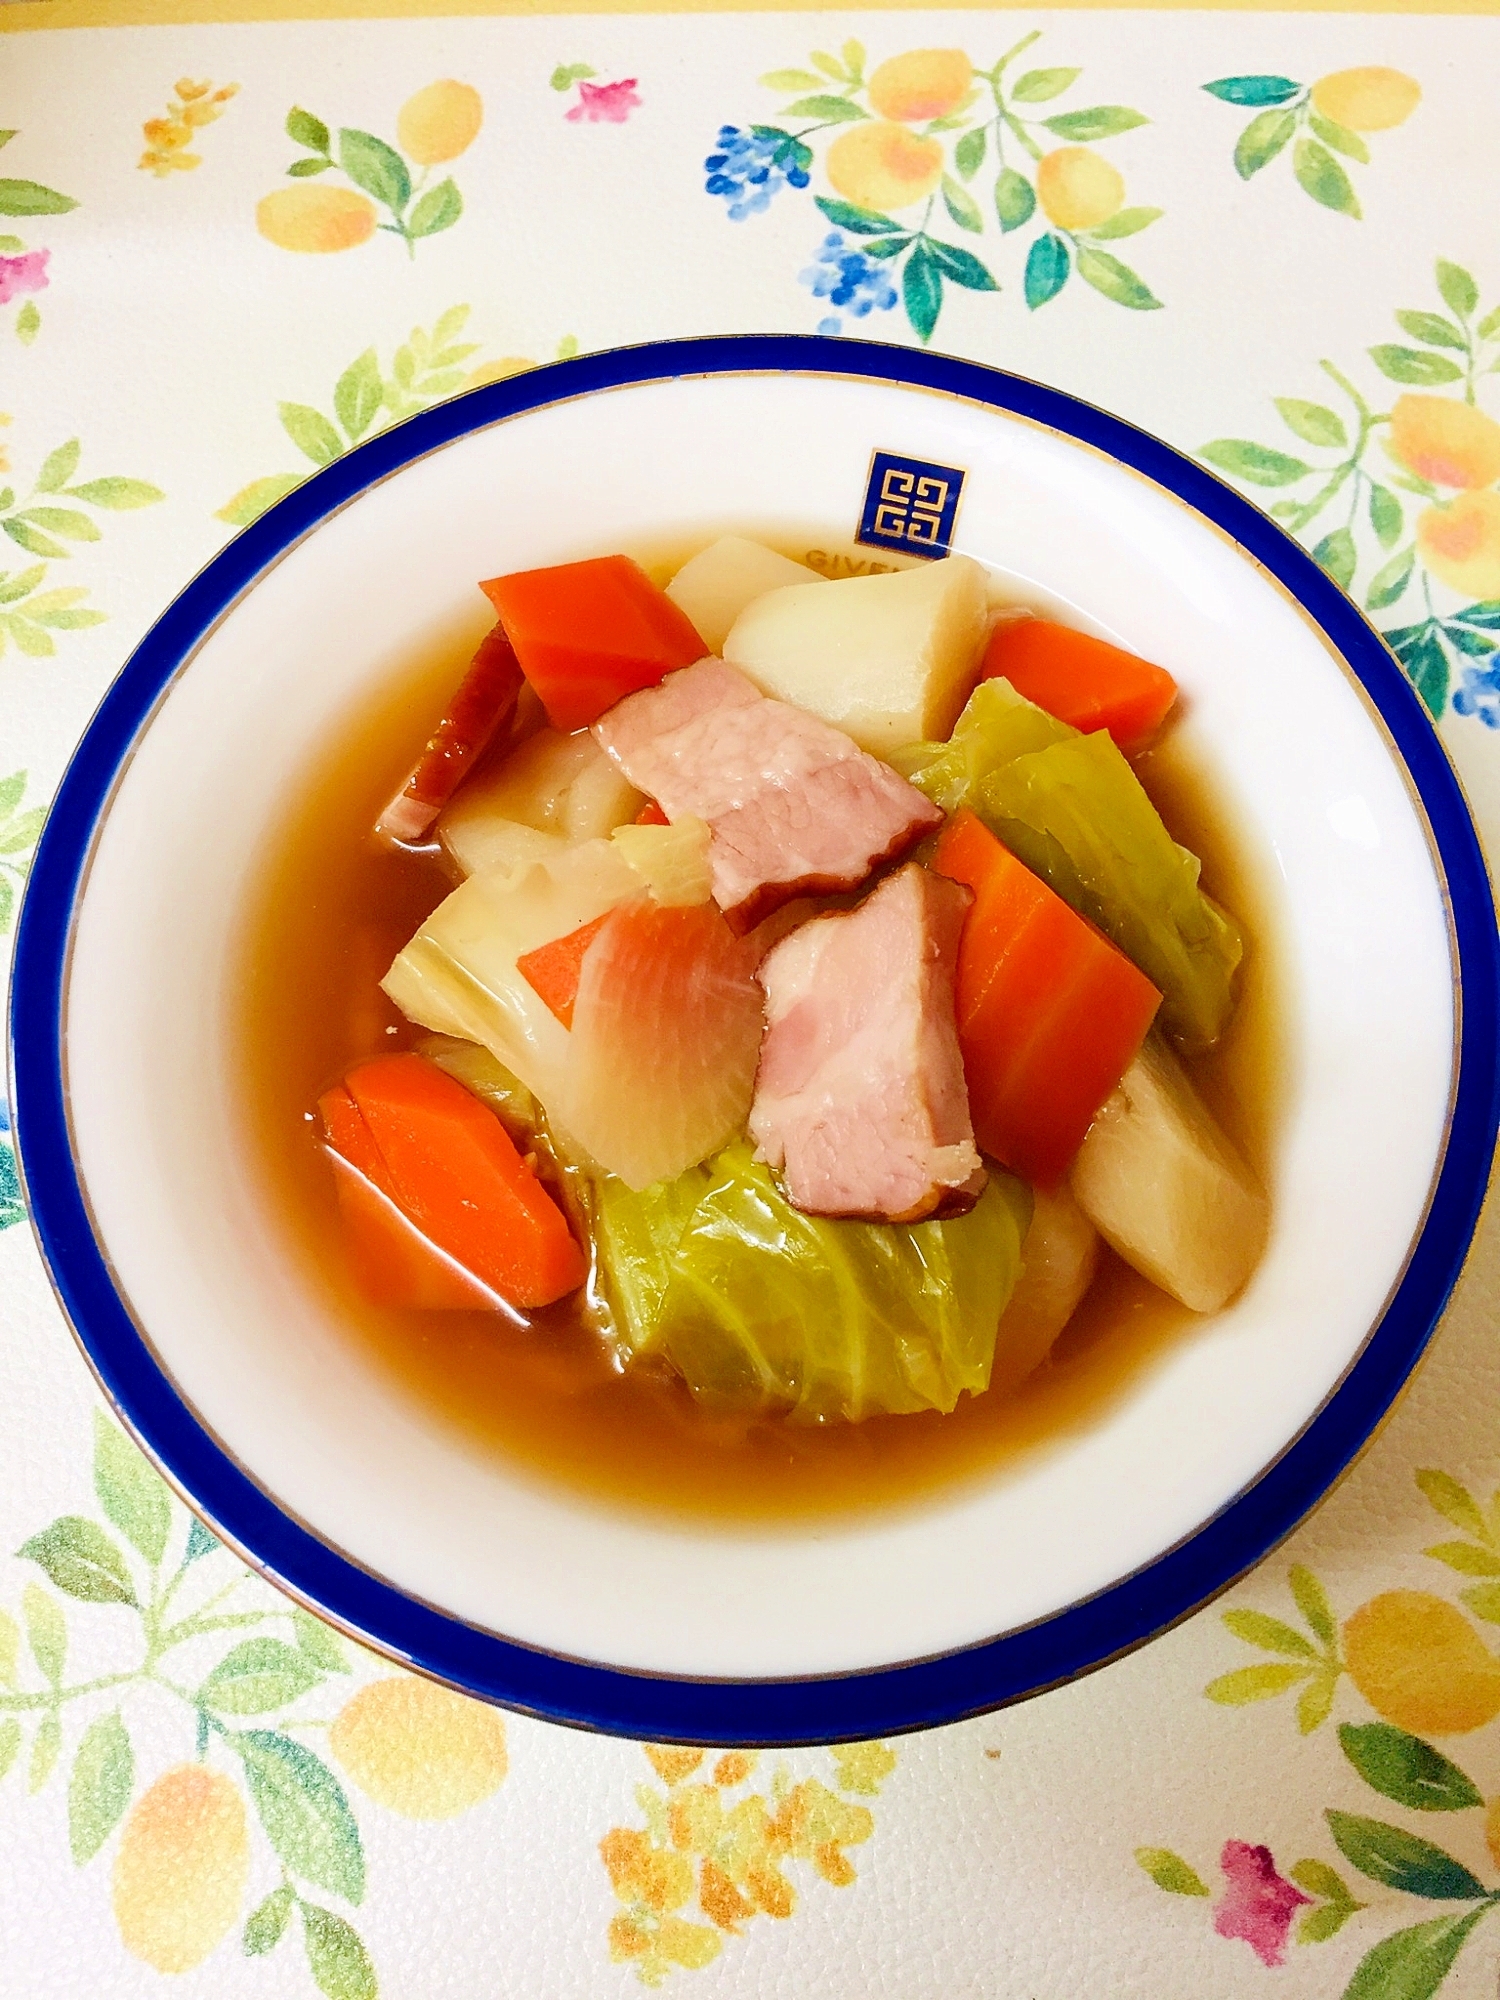 野菜とベーコンでごろっと具材の中華風スープ